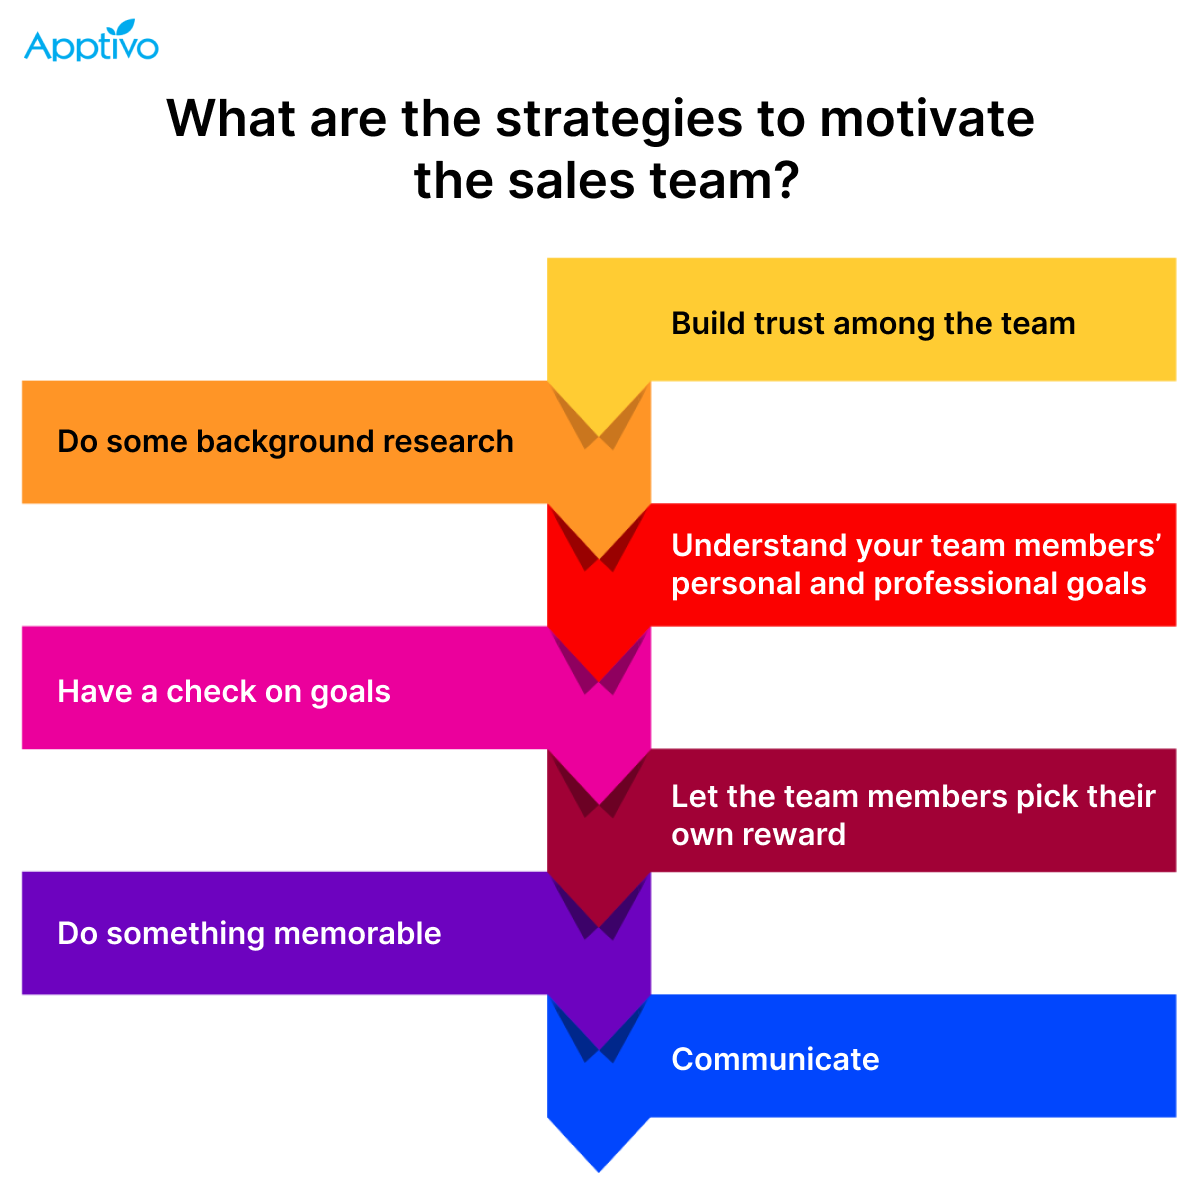 Sales motivation: 12 proven techniques to motivate your team